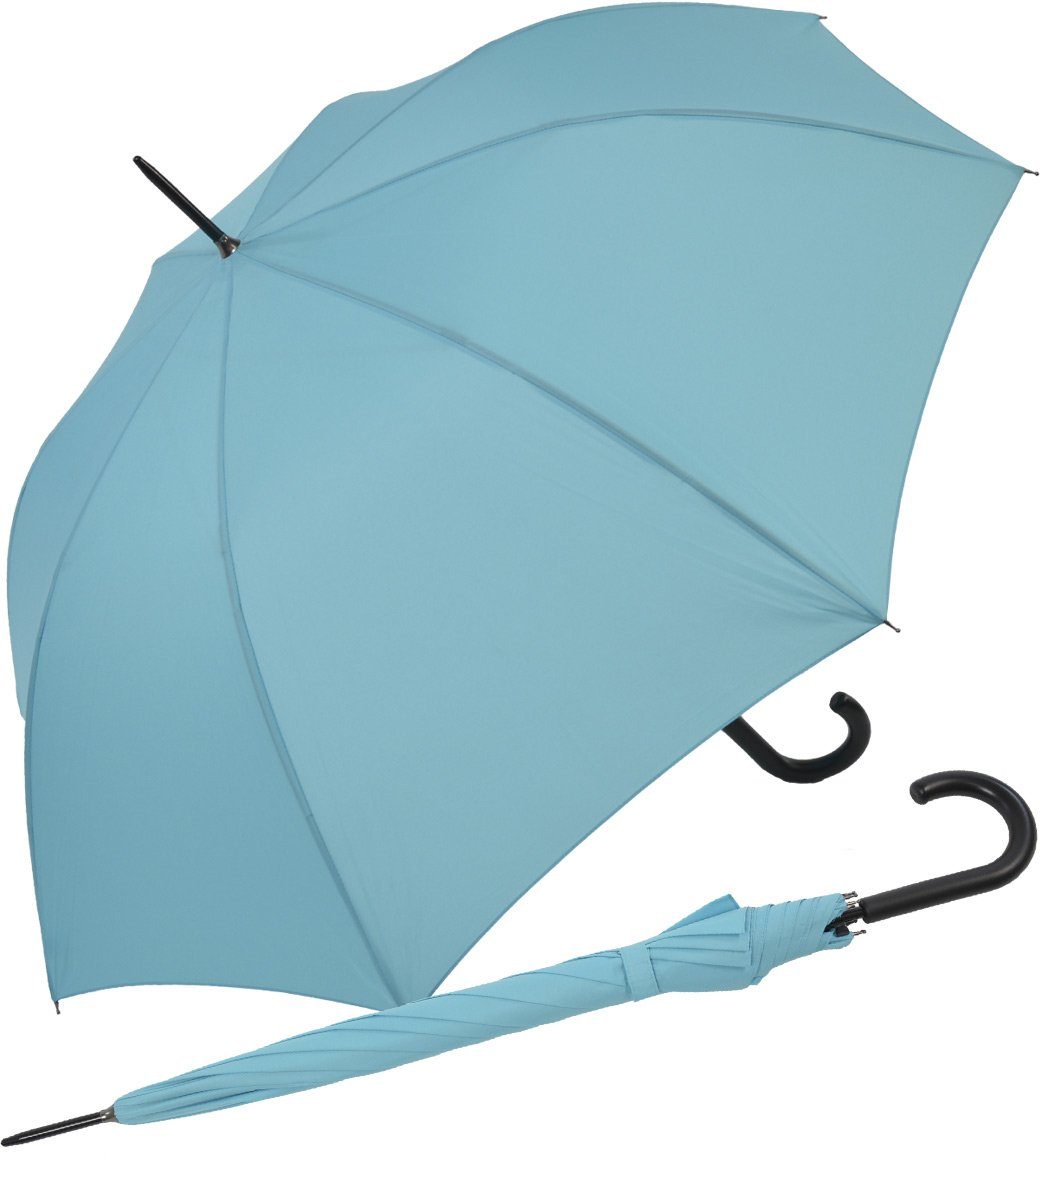 RS-Versand Langregenschirm großer stabiler Regenschirm mit Auf-Automatik, für Damen und Herren in vielen modischen Farben hellblau